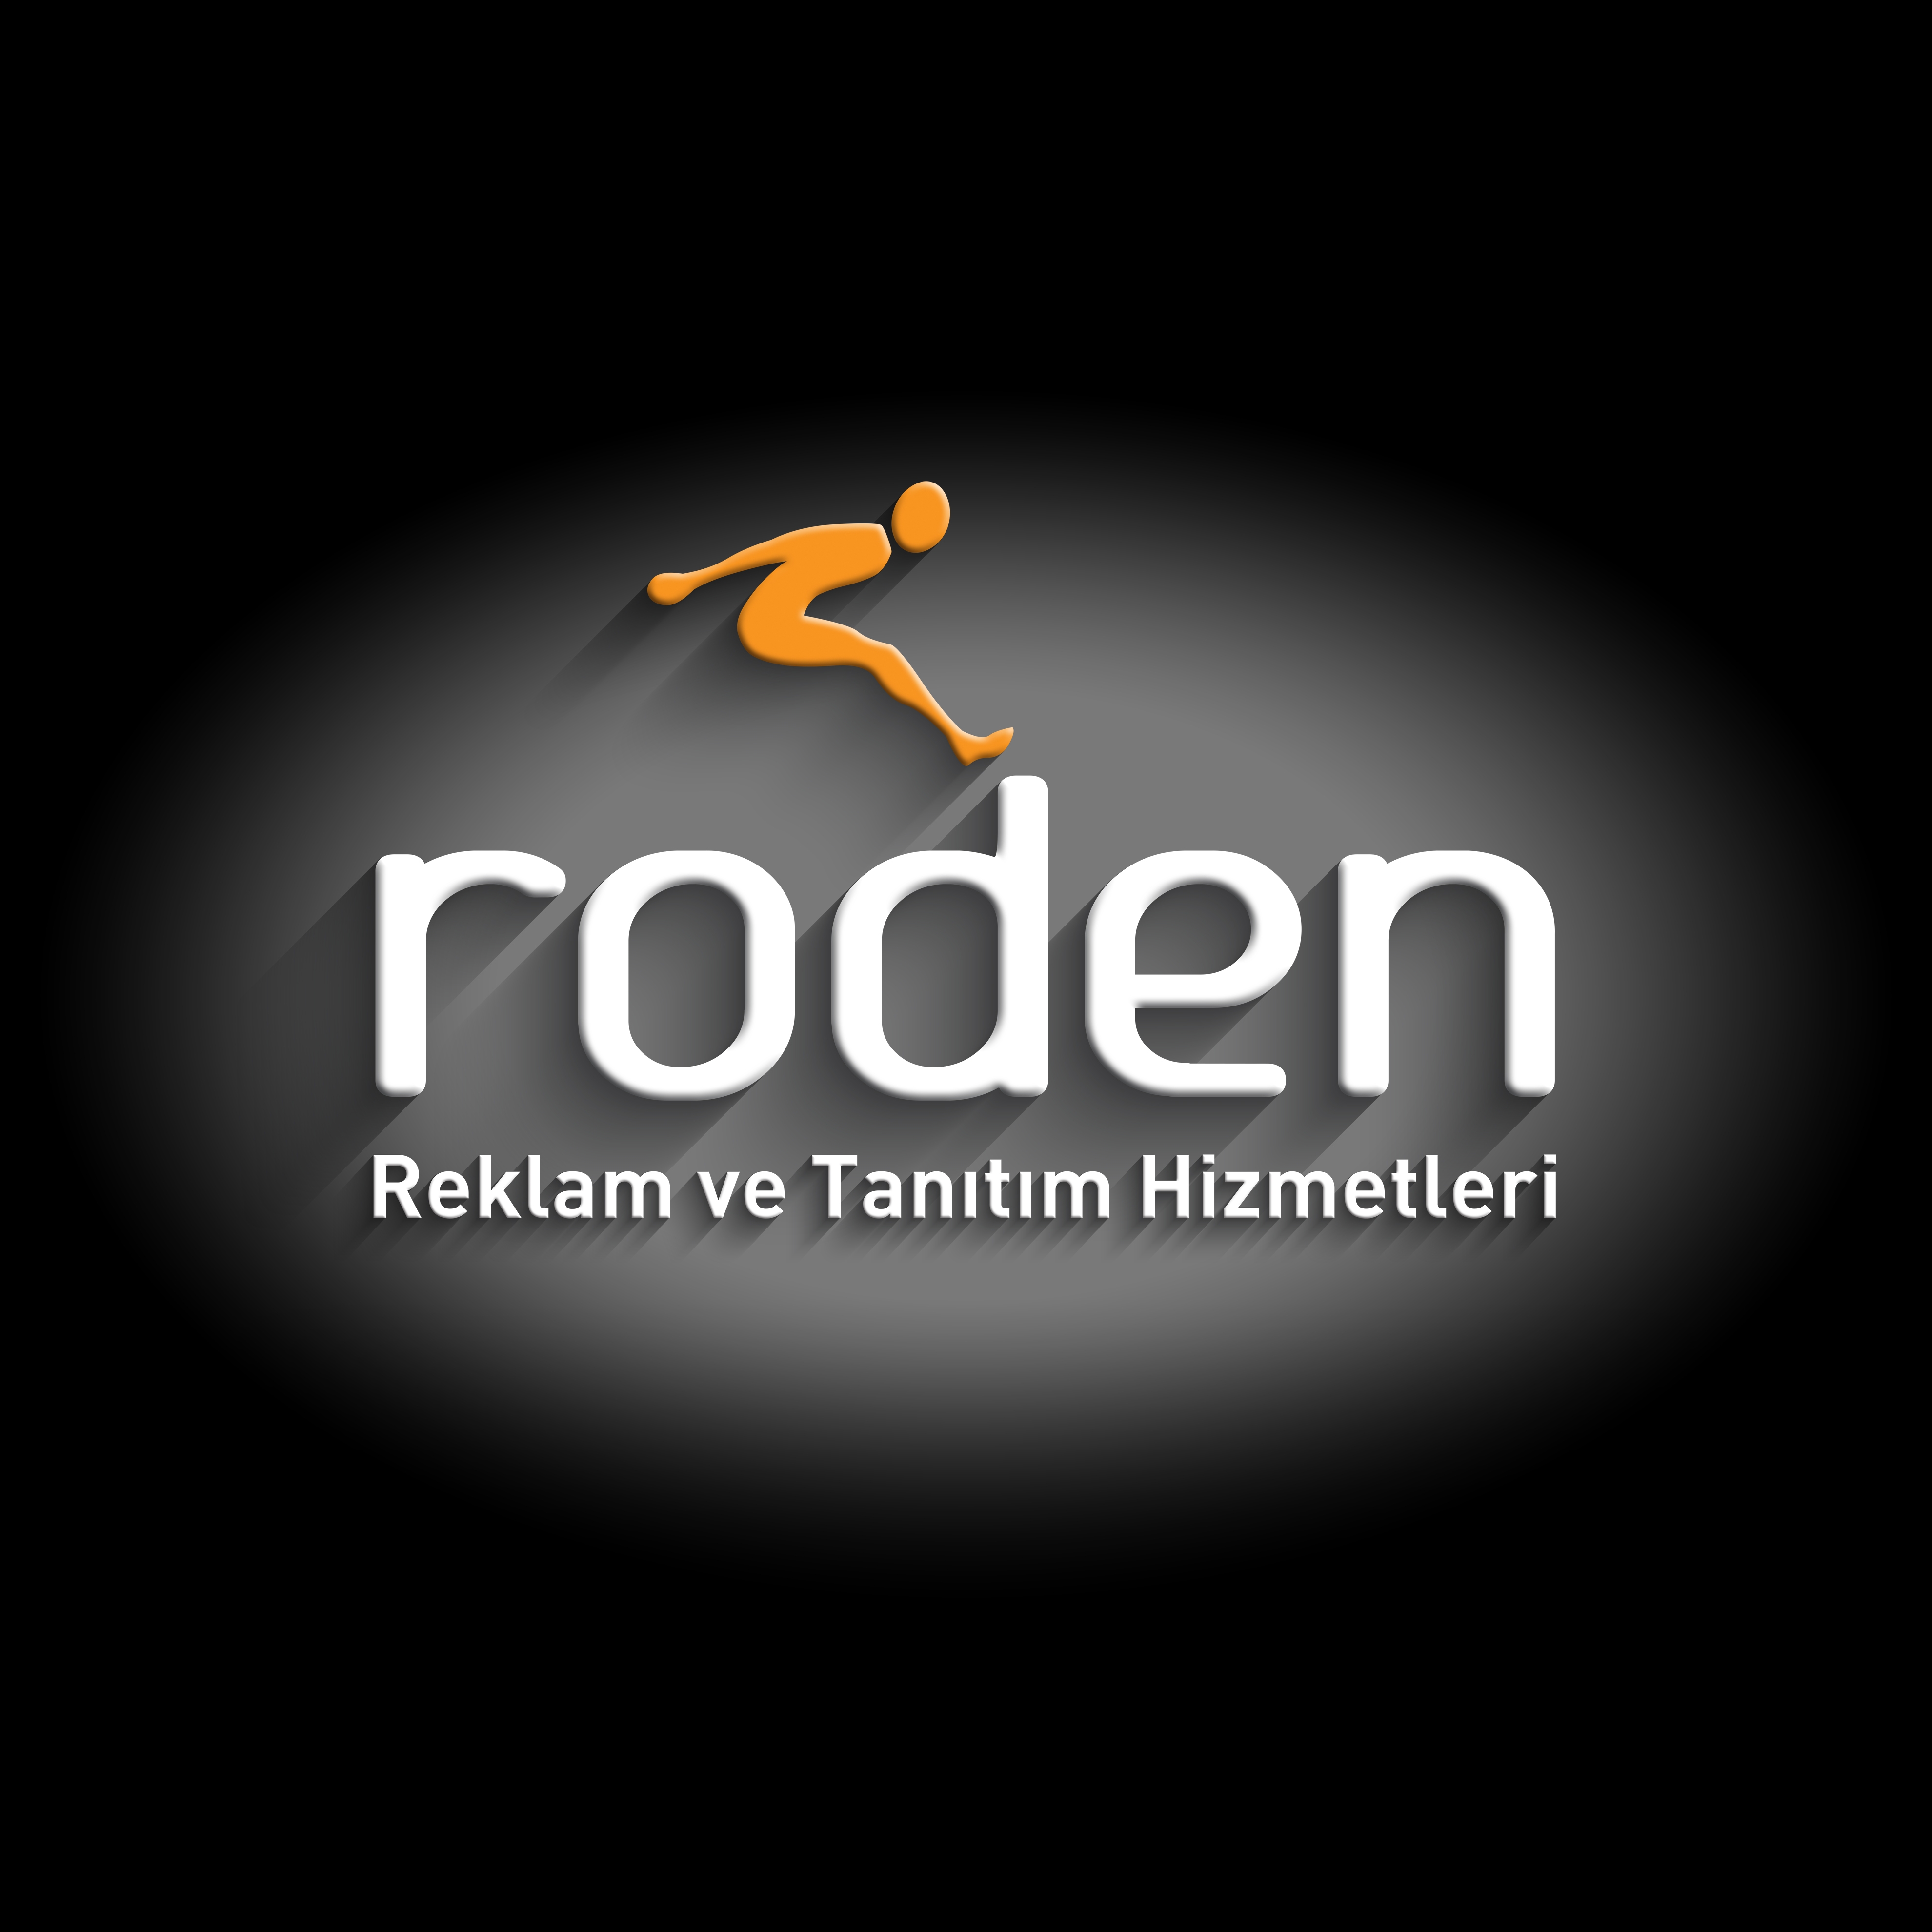 Roden logo